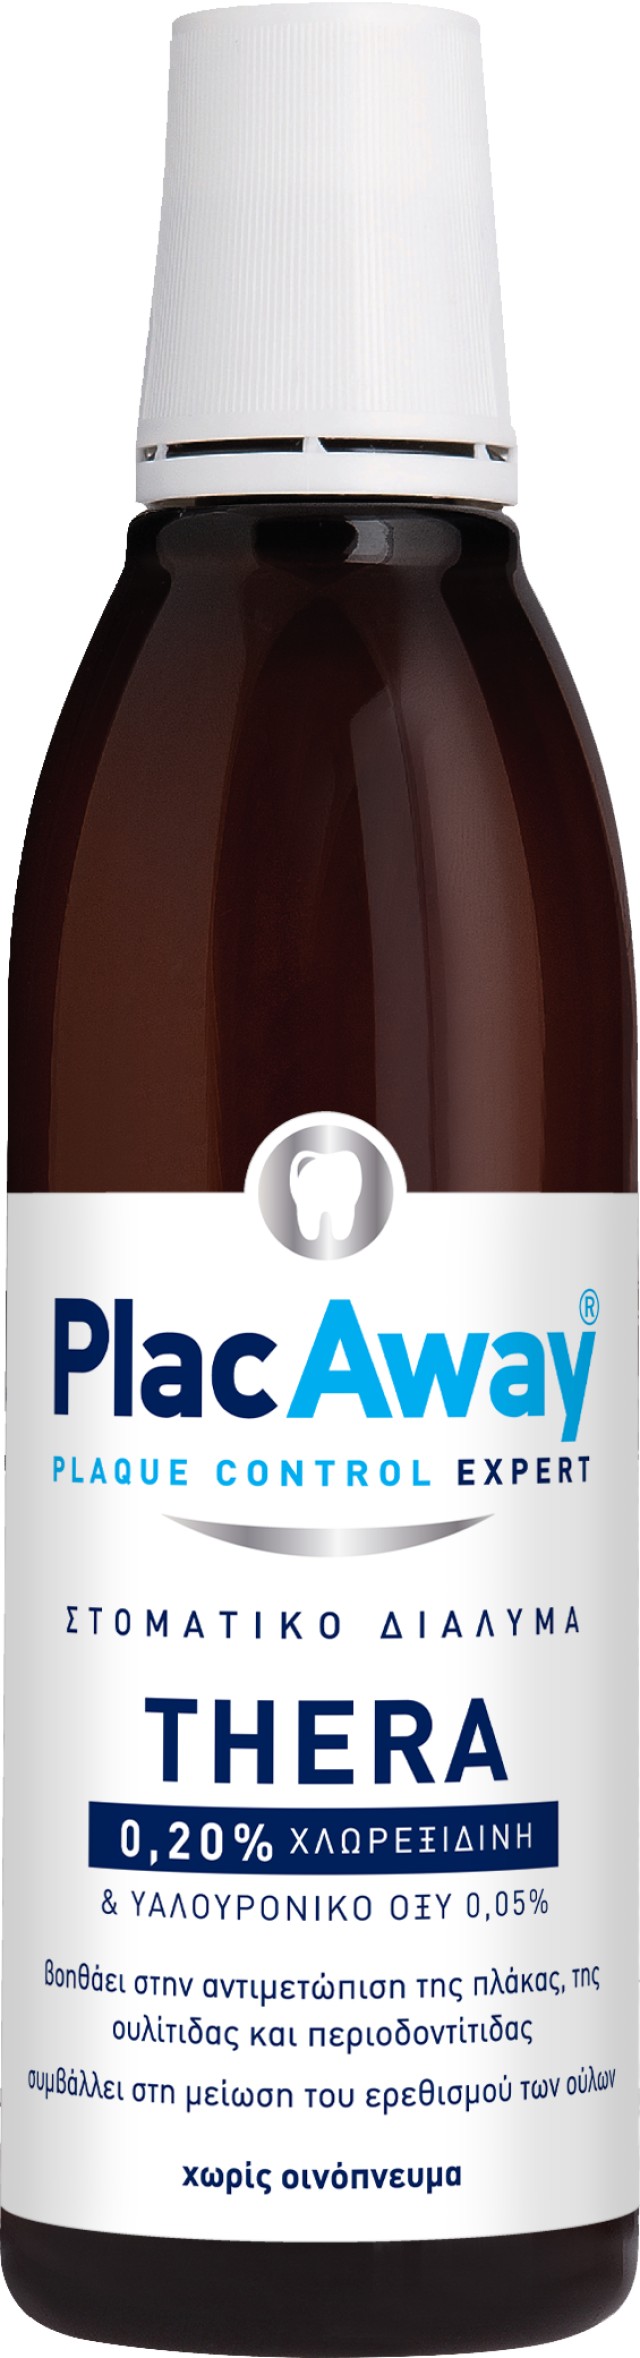 Plac Away Thera Plus 0.20% Στοματικό Διάλυμα για την Ουλίτιδα - Περιοδοντίτιδα, 250ml